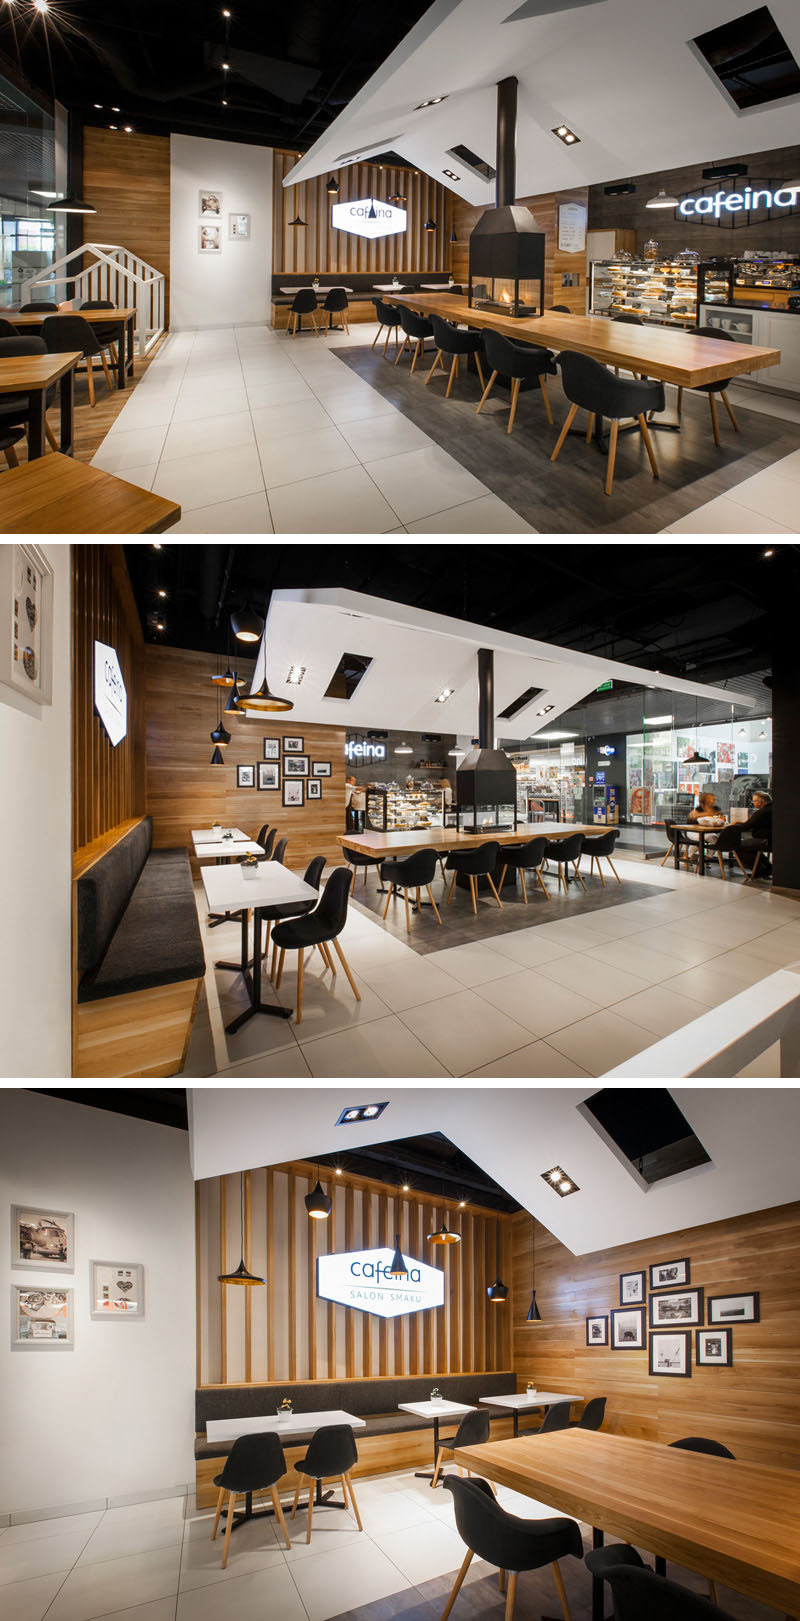 Это кафе оформлено в современном стиле с уютной атмосферой благодаря расположенному в центре камину и удобным креслам.